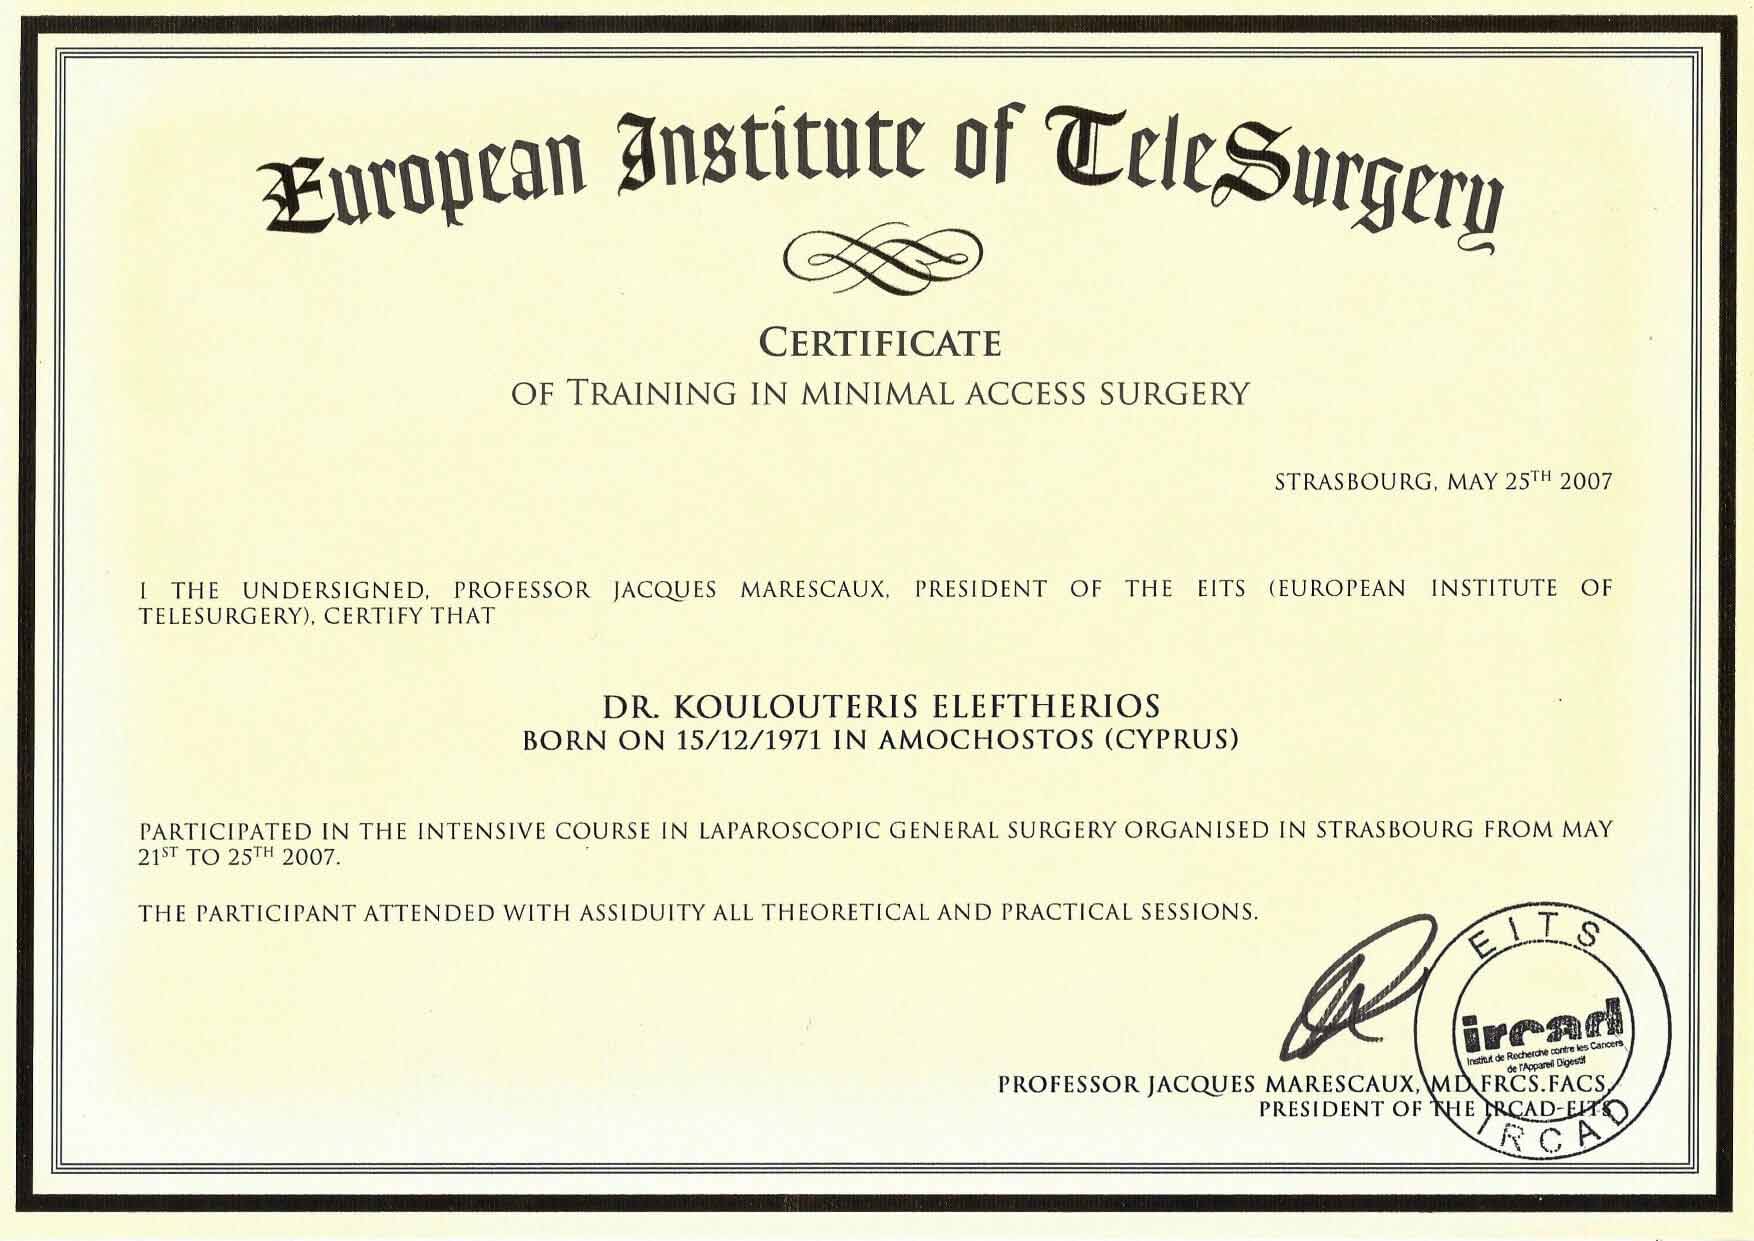 Δρ Κουλουτερης Ευρωπαικο Ινστιτουτο Χειρουργικης Πιστοποιητικο Εκπαιδευσης Ελαχιστη Επεμβατικη Χειρουργικη